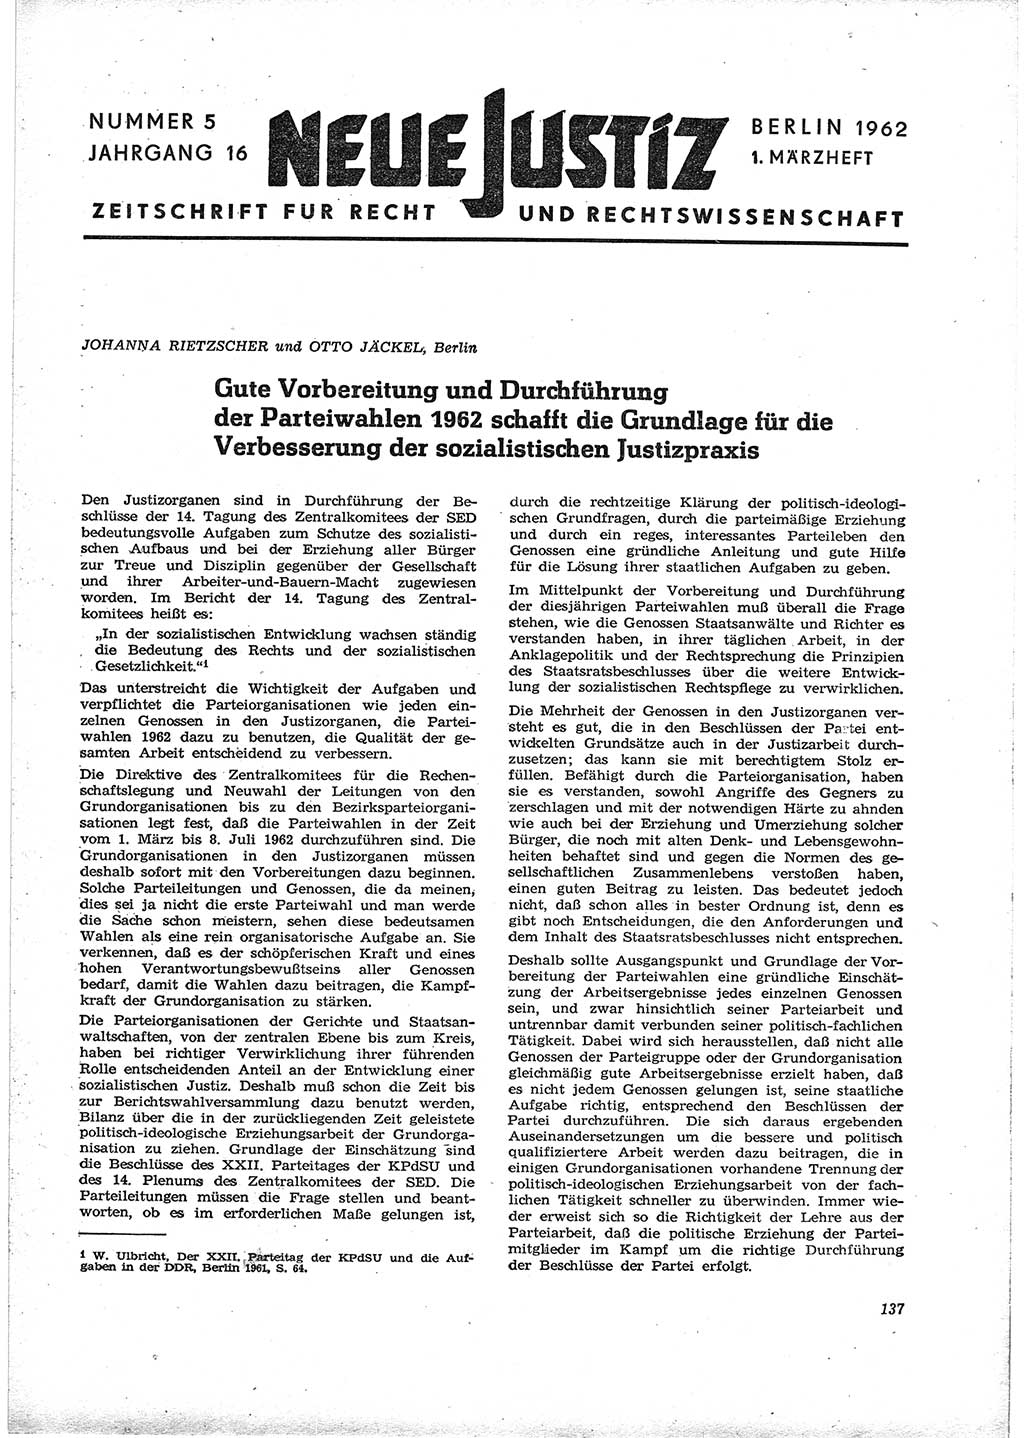 Neue Justiz (NJ), Zeitschrift für Recht und Rechtswissenschaft [Deutsche Demokratische Republik (DDR)], 16. Jahrgang 1962, Seite 137 (NJ DDR 1962, S. 137)